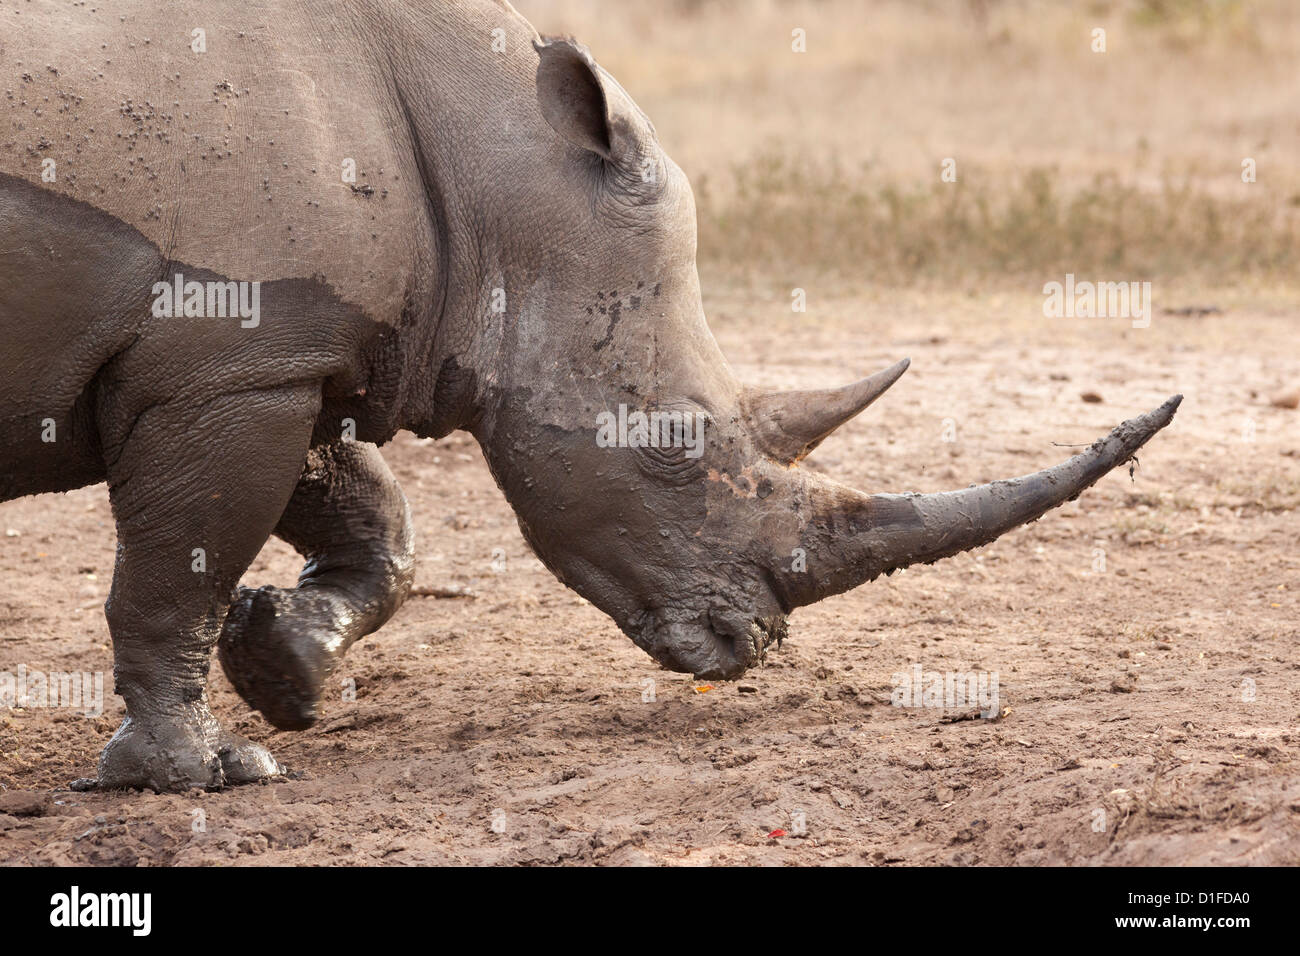 White rhino (Ceratotherium simum), Imfolozi game reserve, KwaZulu-Natal, South Africa, Africa Stock Photo